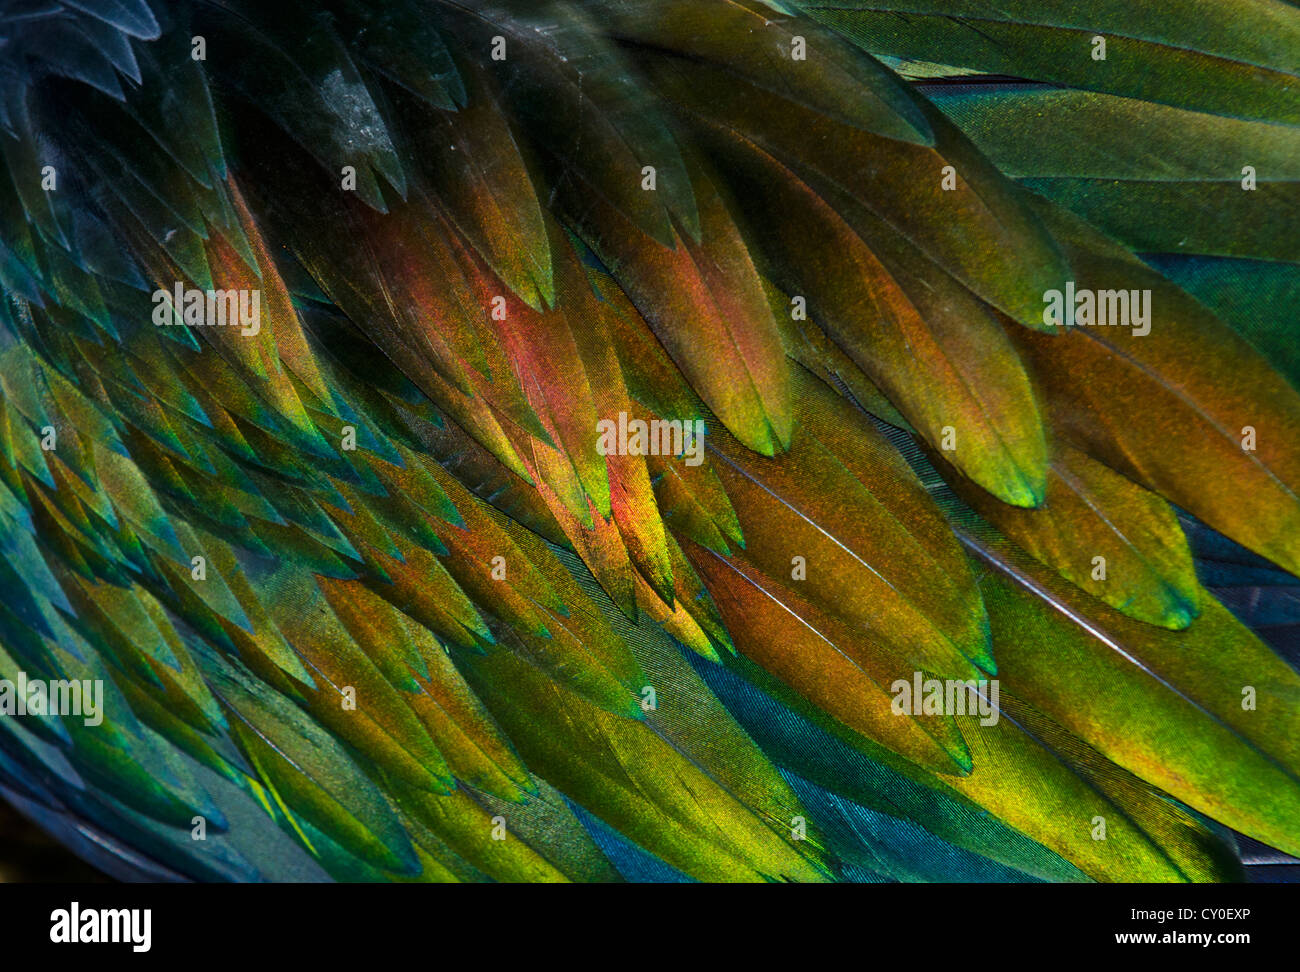 Detalle de plumas de Paloma de Nicobar (Caloenas nicobarica) Foto de stock